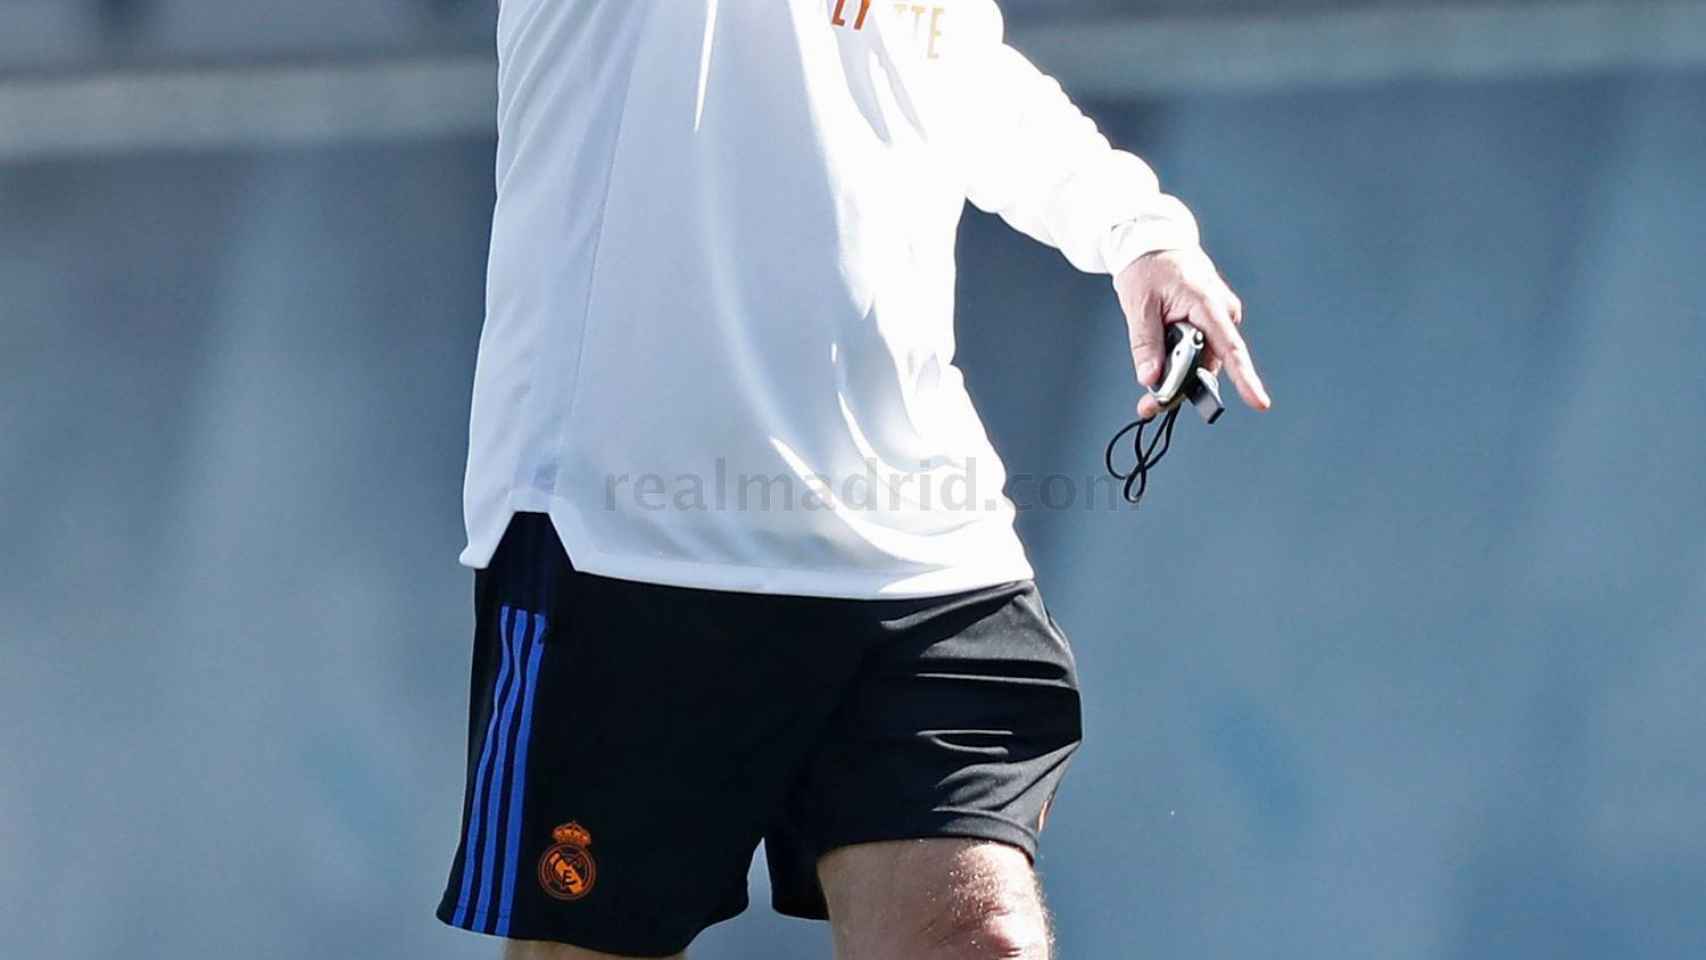 Carlo Ancelotti, durante un entrenamiento del Real Madrid